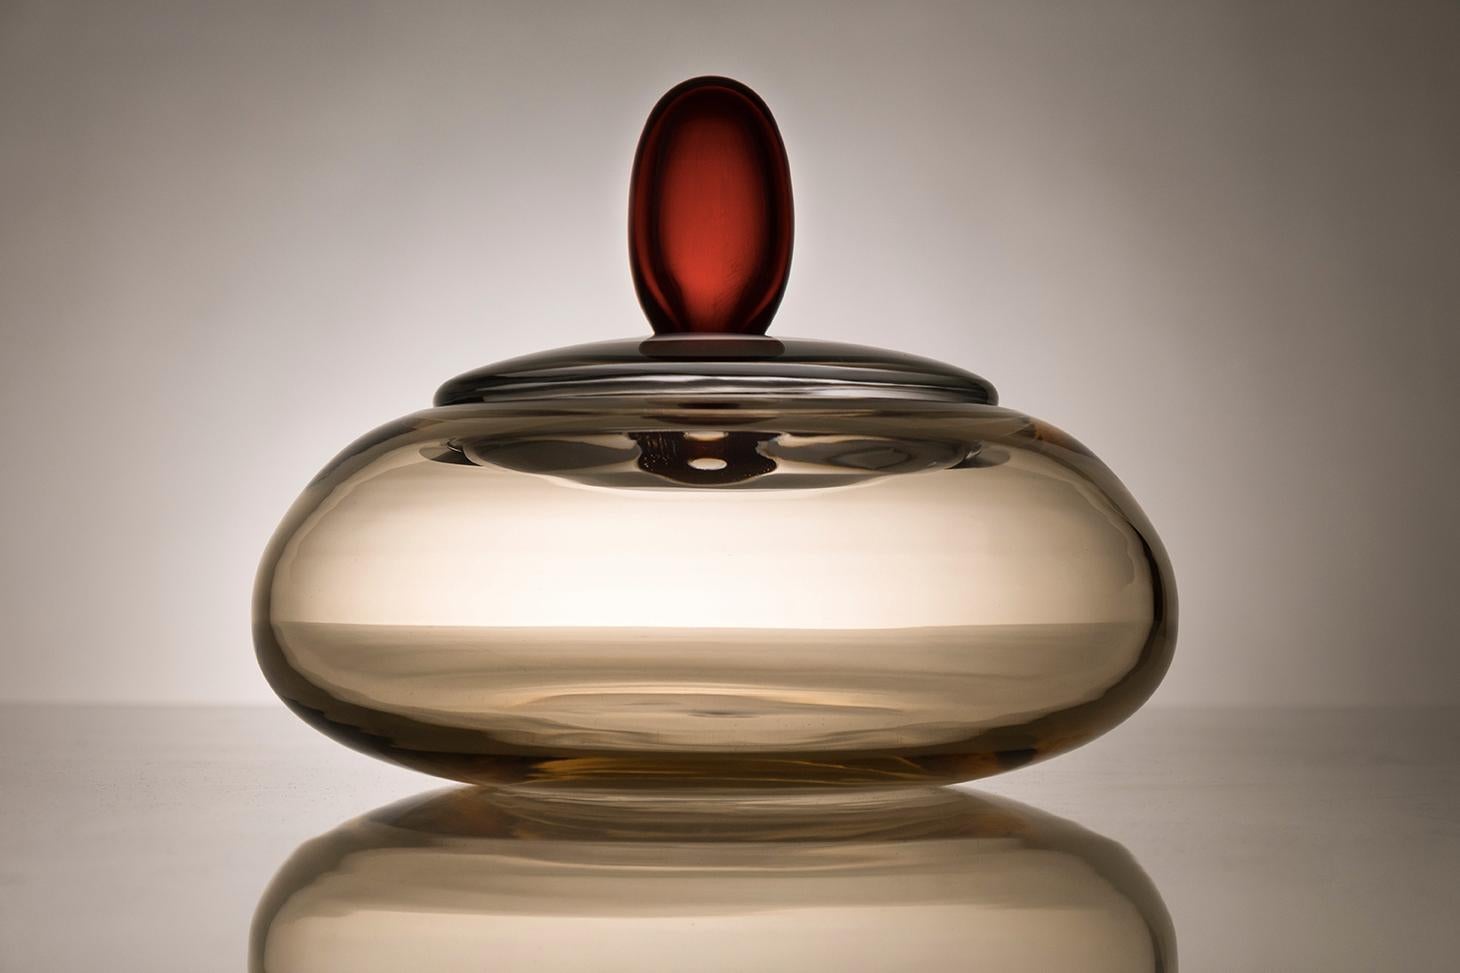 21ème siècle Karim Rashid centerpiece container Murano glass various colors.
Conçu par Karim Rashid, Kountess est un pot majestueux et sculptural avec un couvercle. Tout comme son modèle jumeau, Kount, Kountess peut également avoir différentes